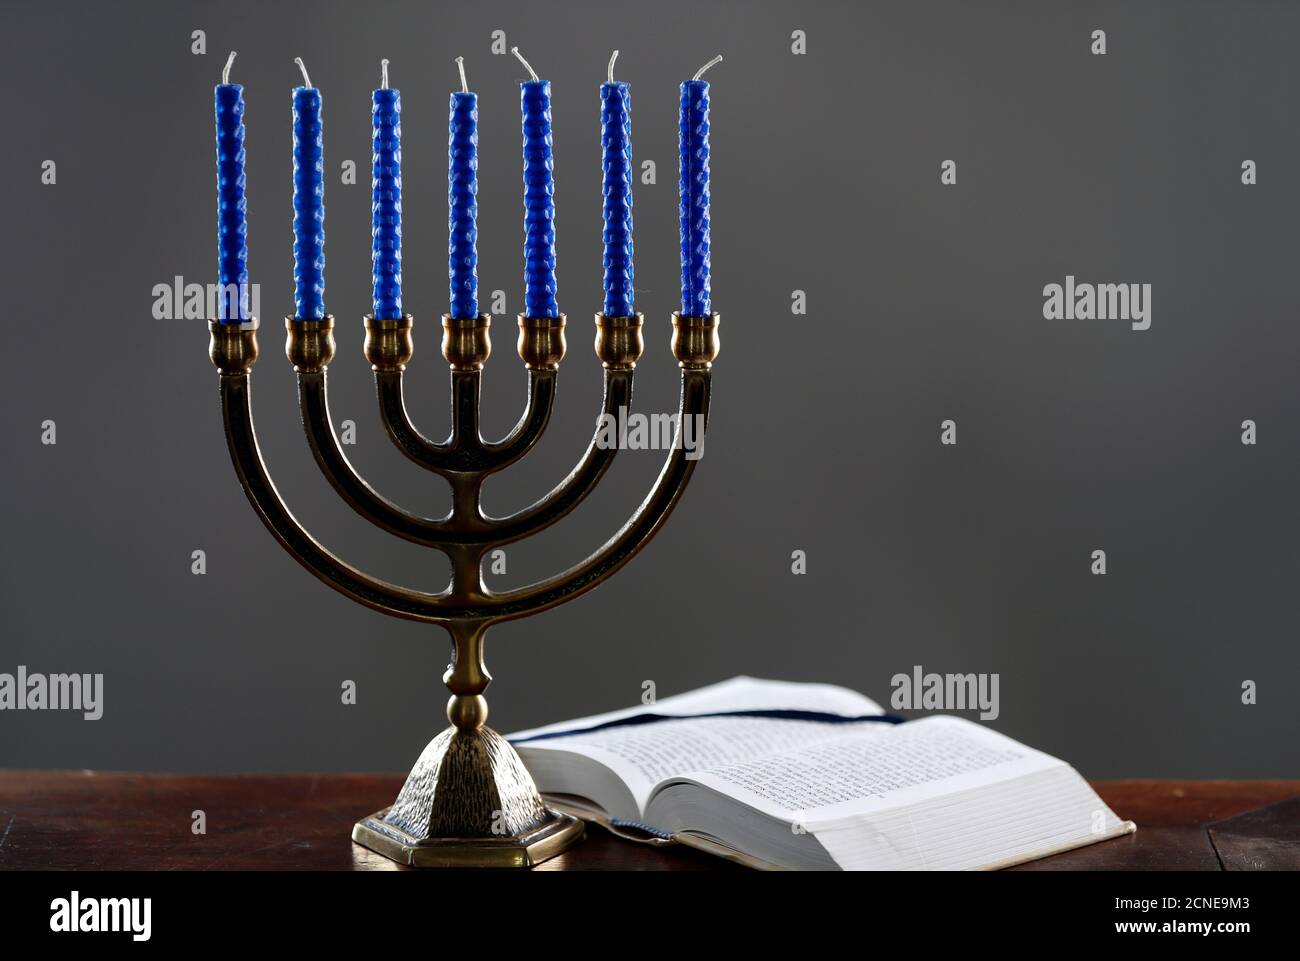 Ouvrir la Torah et la Menorah (chandelier hébraïque de sept lampes), symbole du judaïsme depuis les temps anciens, France, Europe Banque D'Images